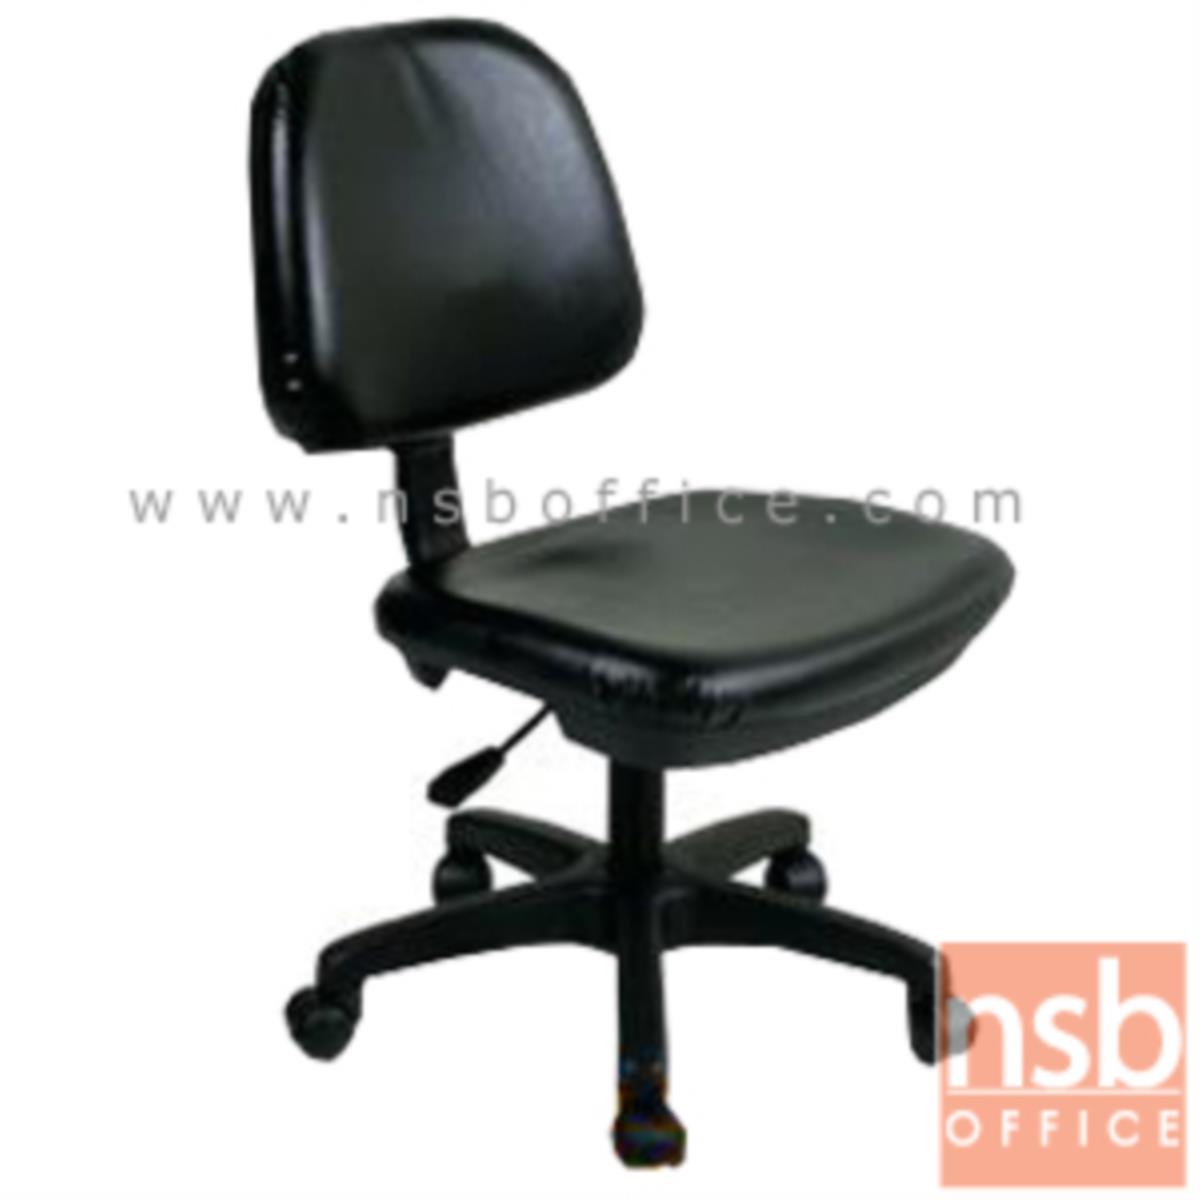 B03A276:เก้าอี้สำนักงาน รุ่น Rosebery (โรสเบรี)  โช๊คแก๊ส ขาพลาสติก